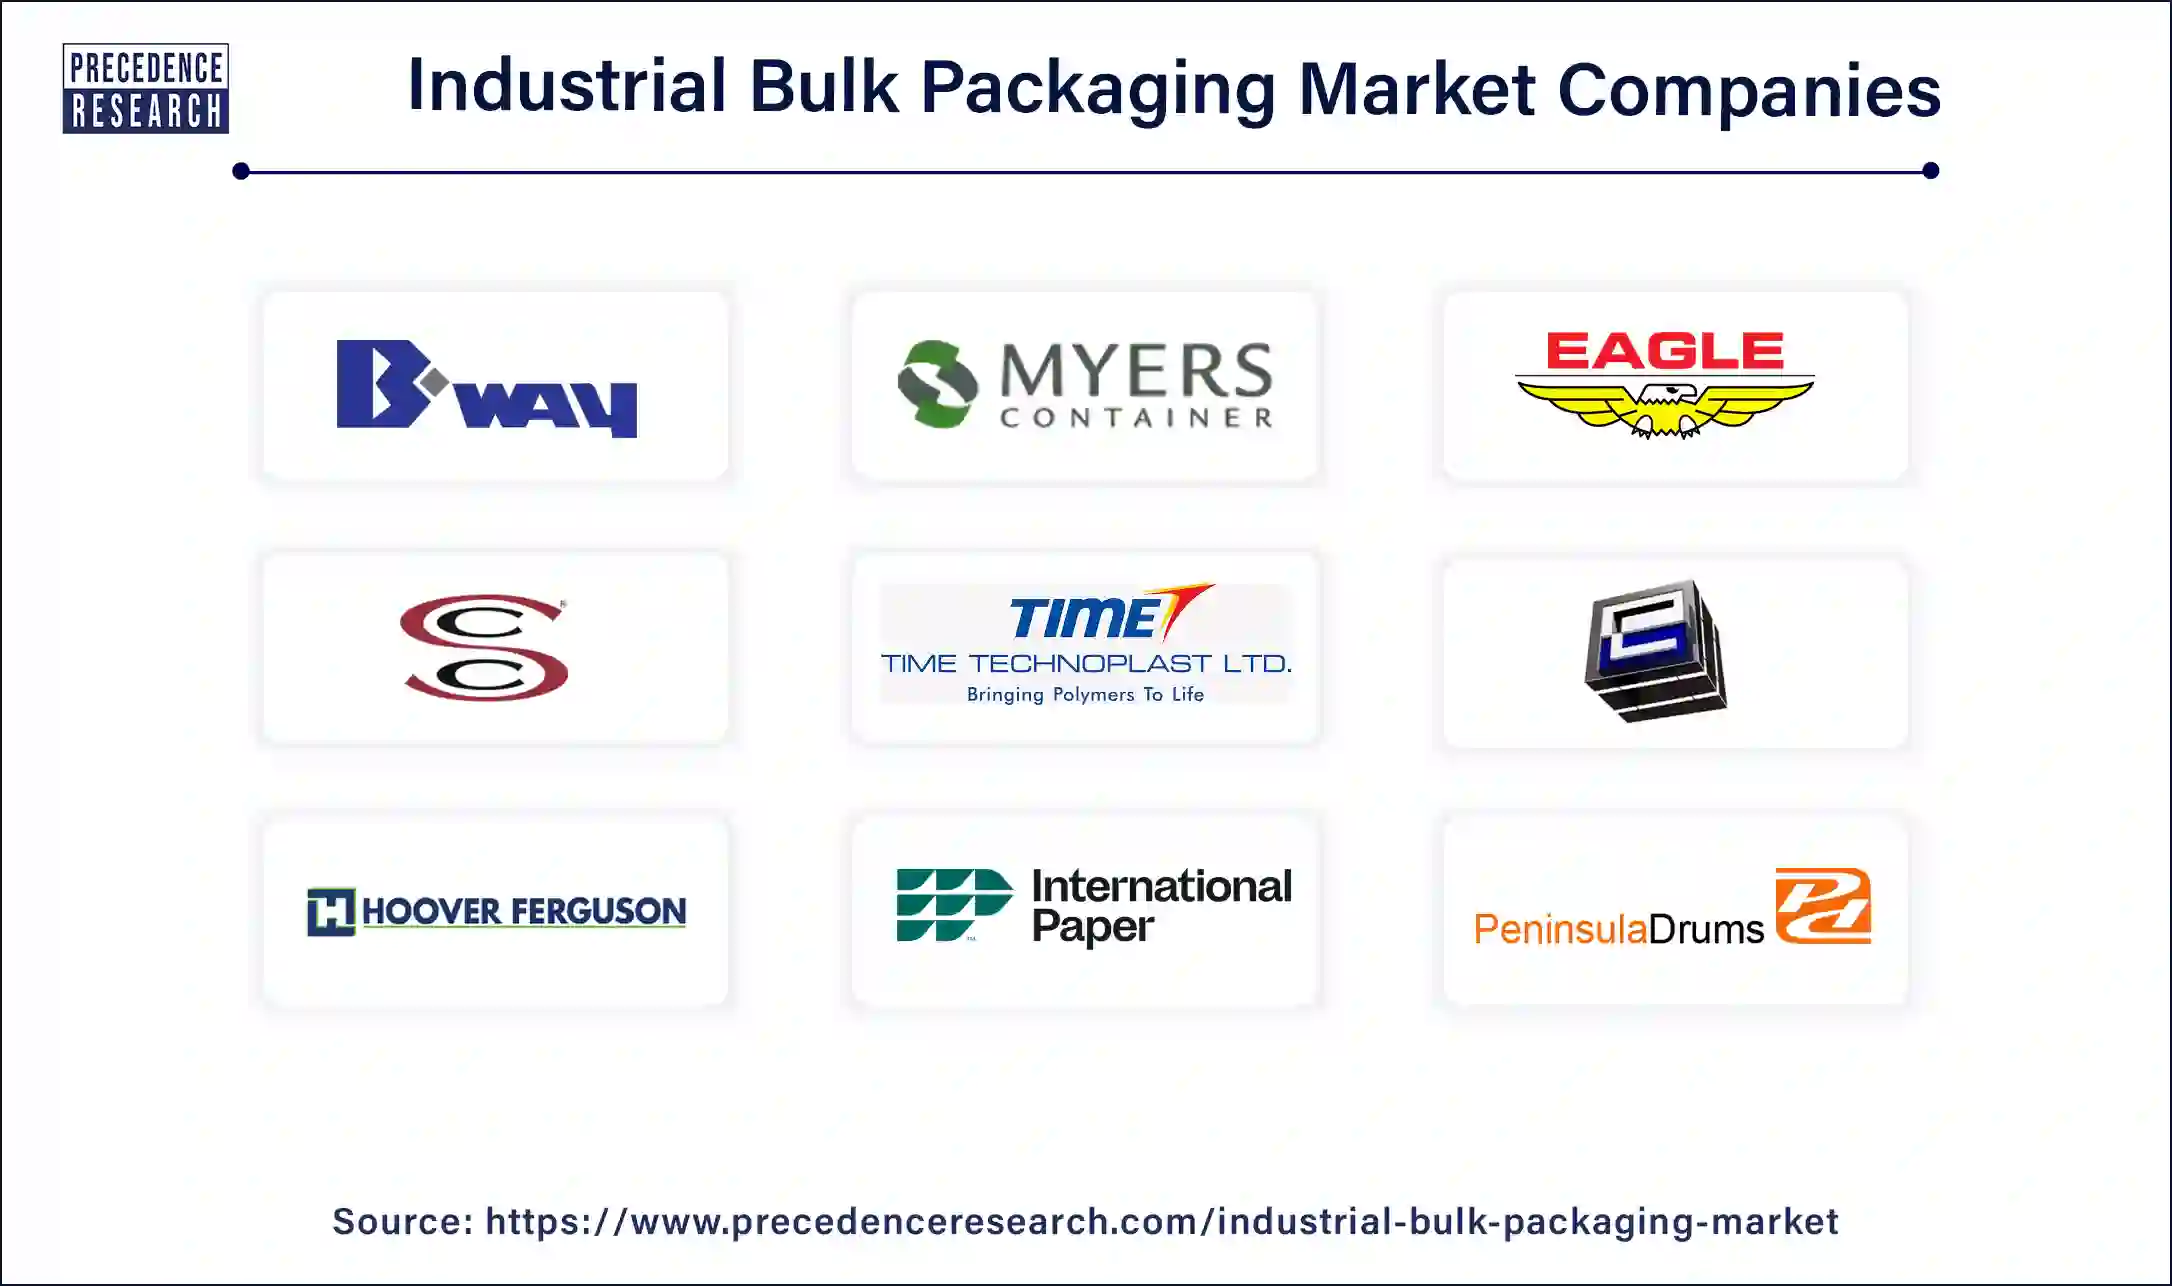 Industrial Bulk Packaging Companies